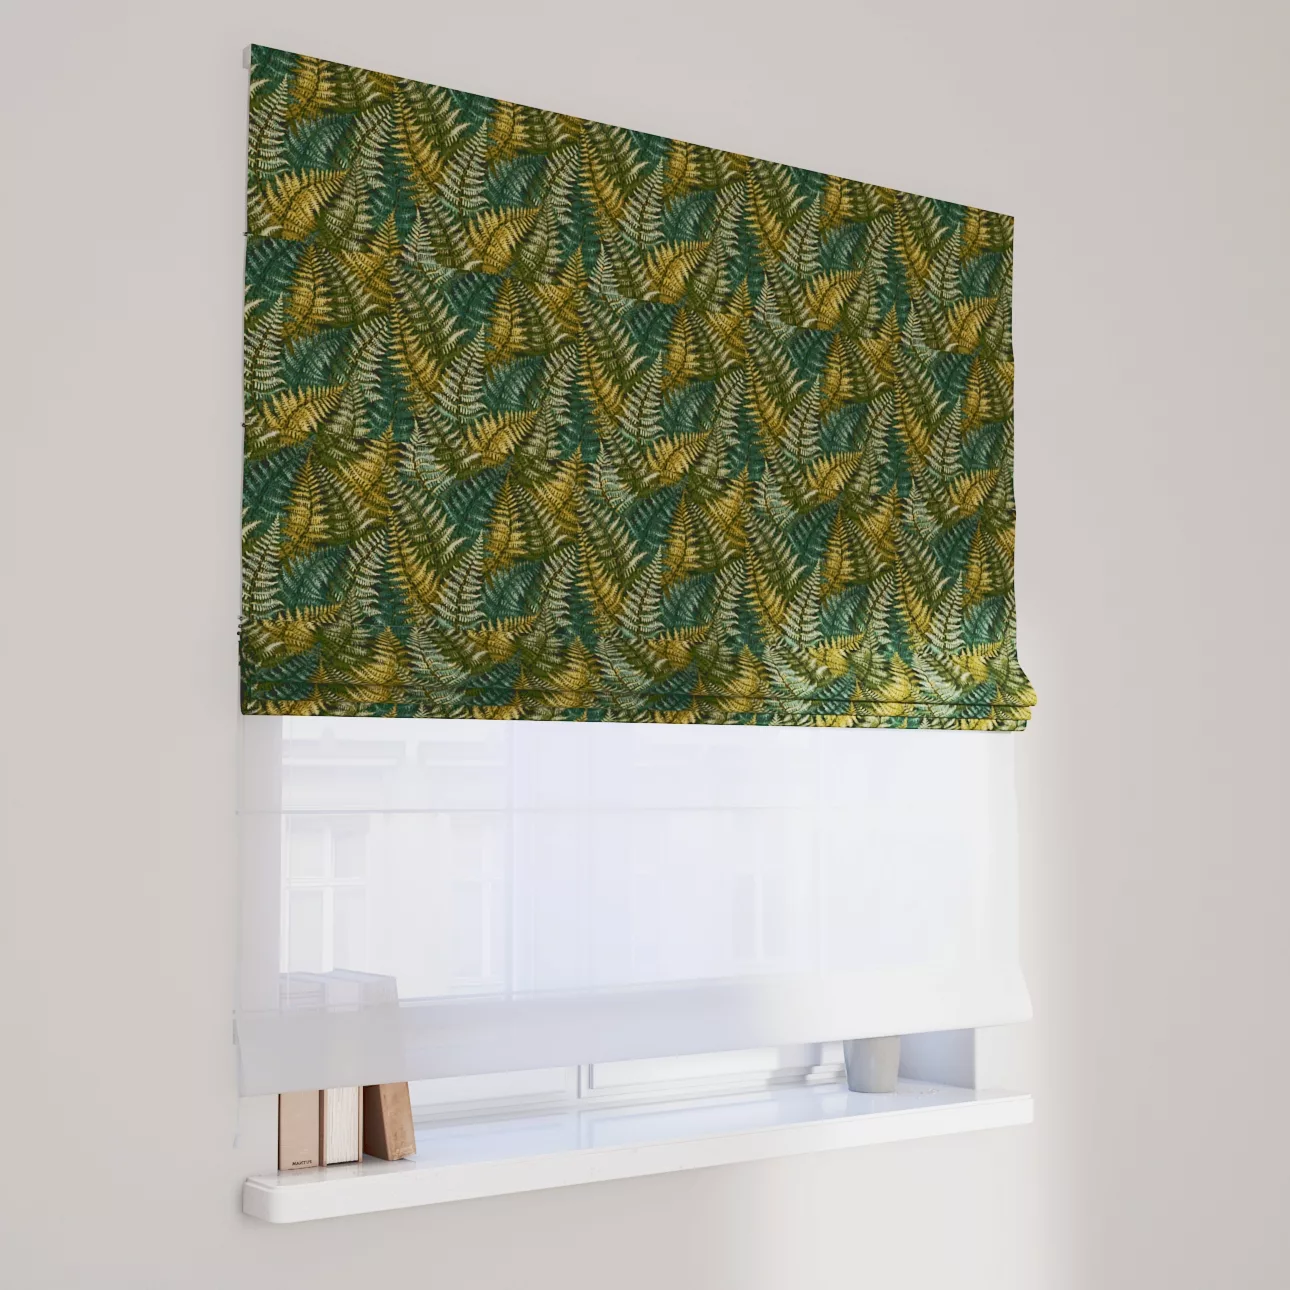 Dekoria Doppelraffrollo Duo, grün, 120 x 170 cm günstig online kaufen